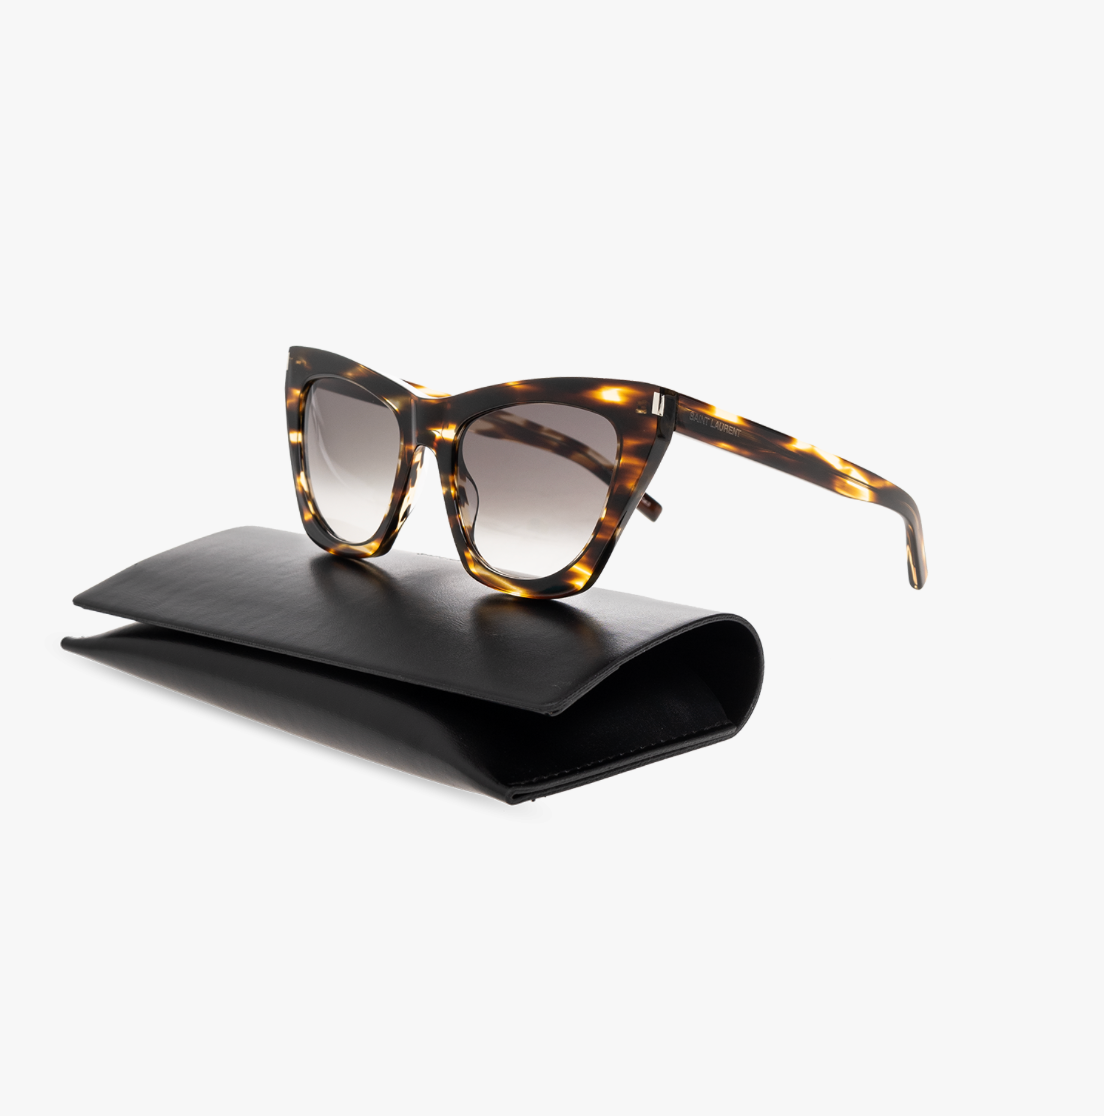 Yvest Saint Laurent SL-214-KATE-024 55mm New Sunglasses